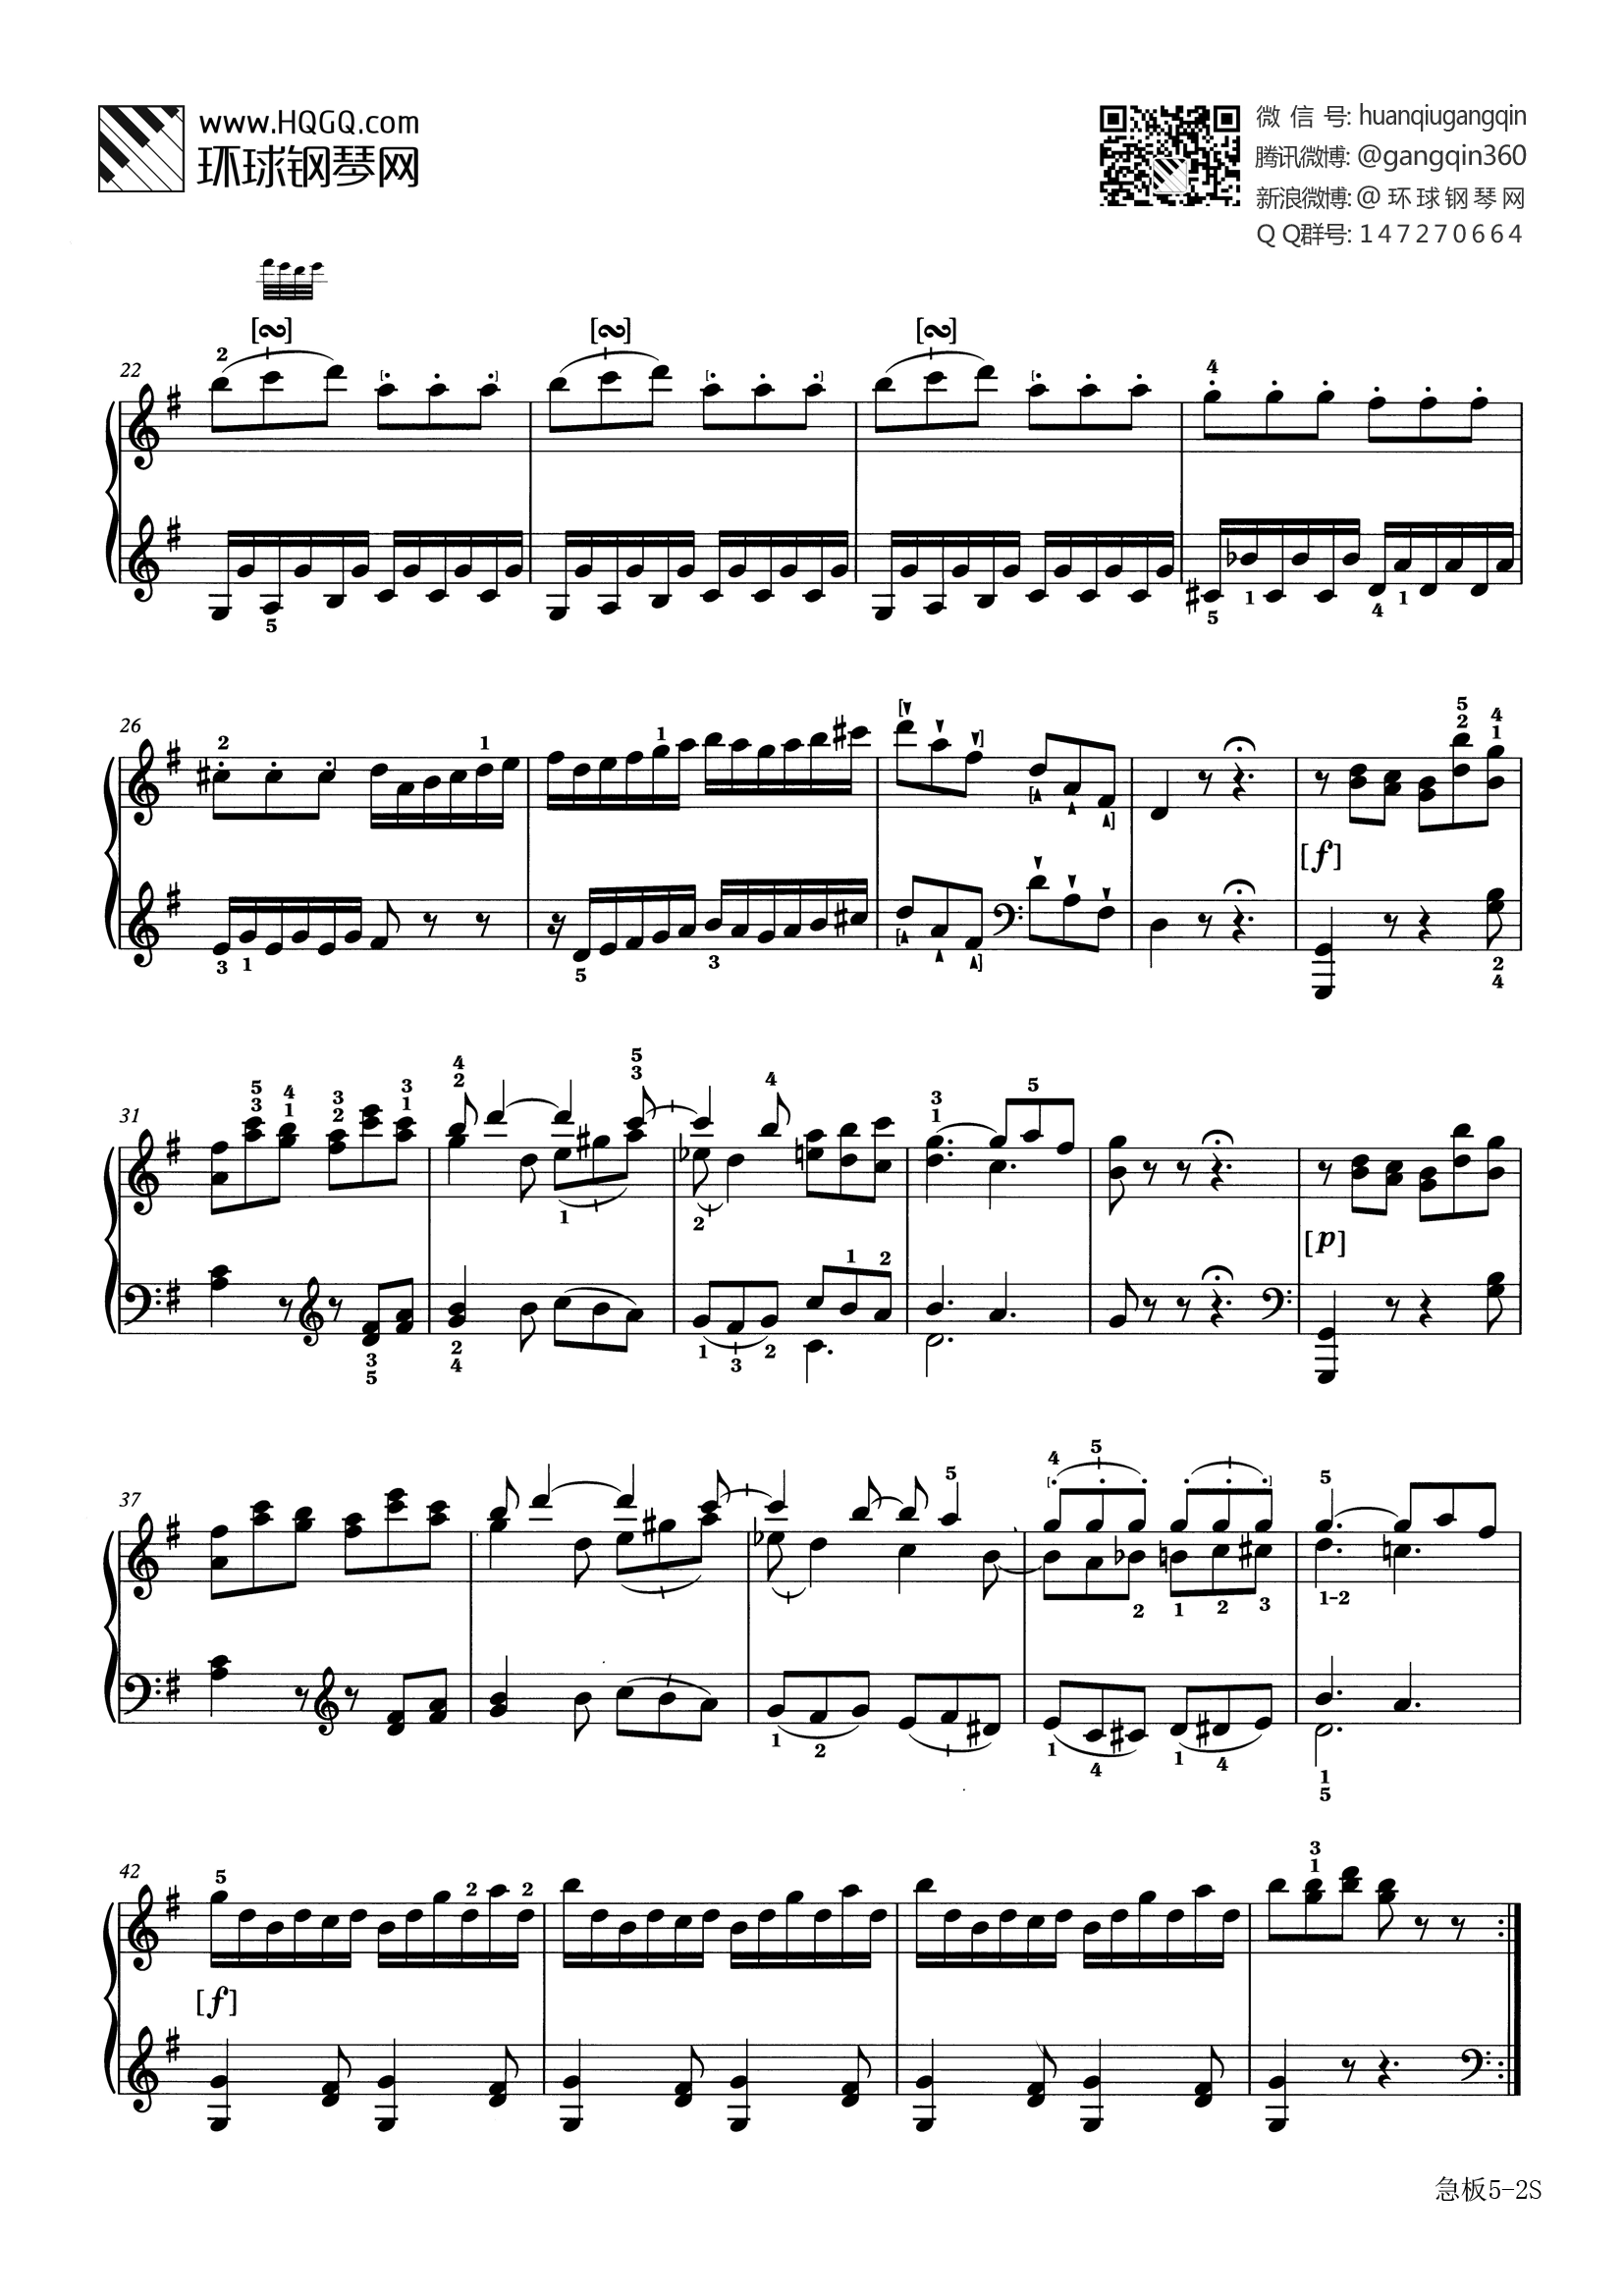 八级钢琴考级曲目放马曲谱子(八级钢琴考级曲目放马曲谱子视频)